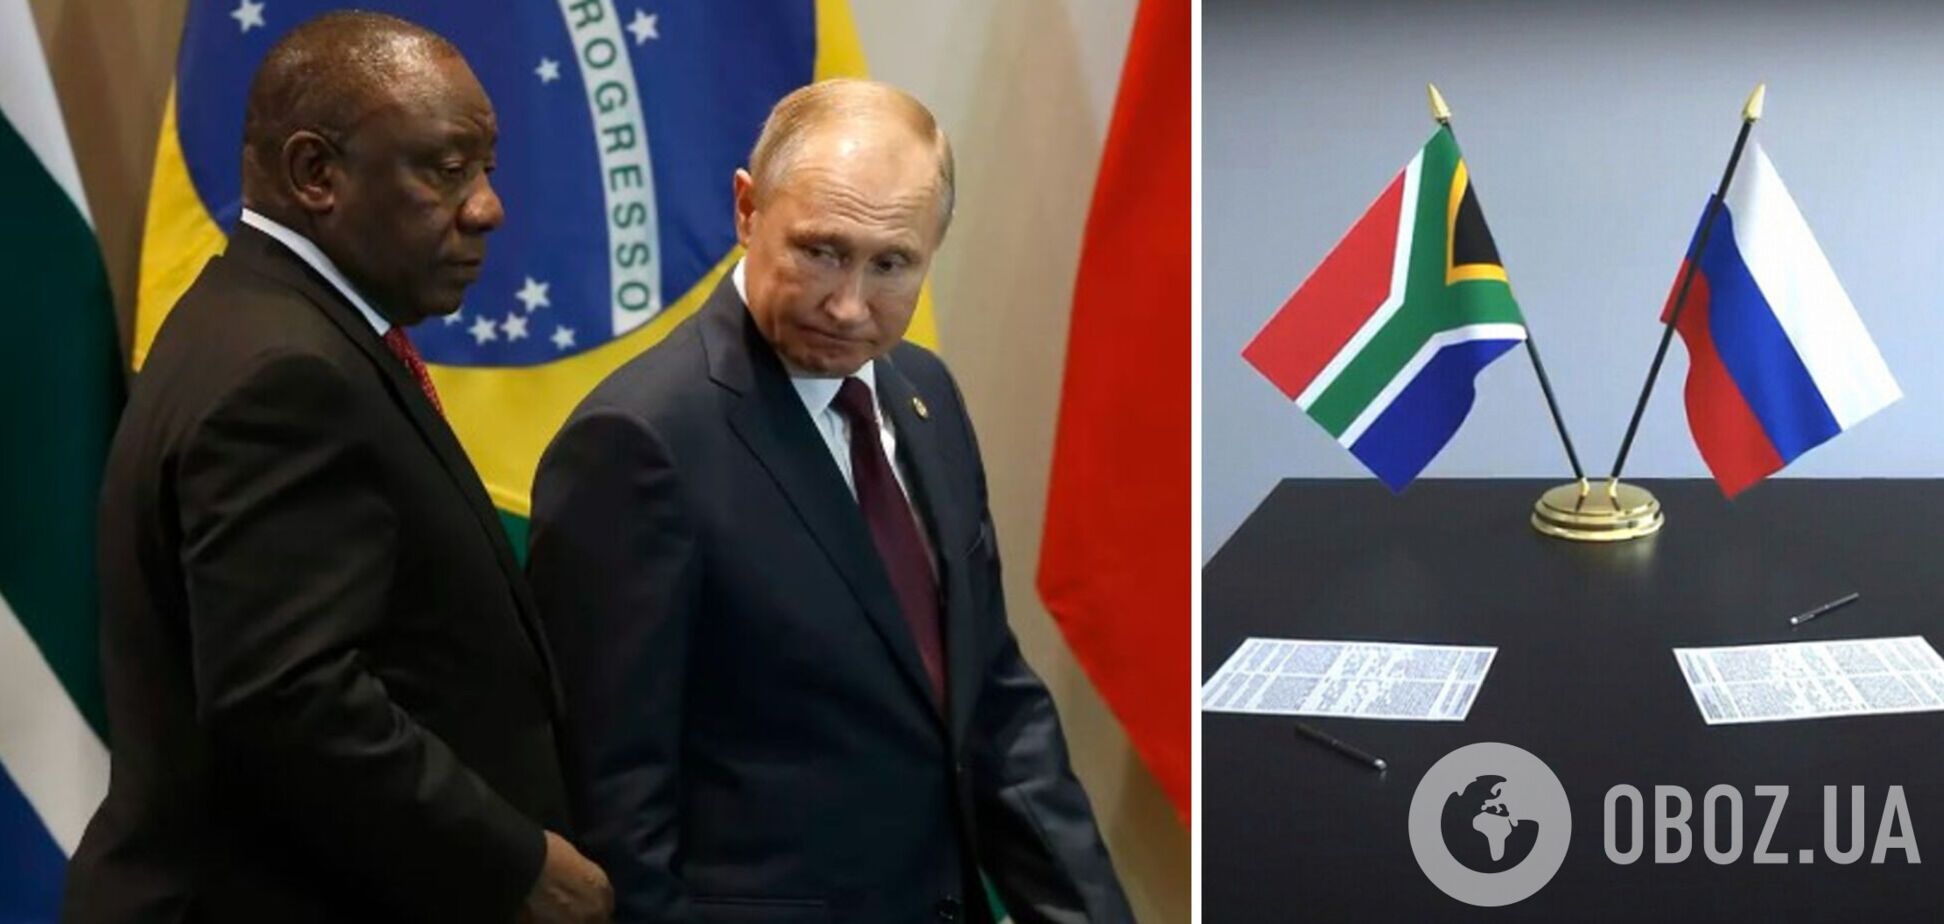 У серпні Путін має намір взяти участь в саміті у ПАР: влада країни заявила, що розуміє зобов’язання по ордеру Гаазького трибуналу 